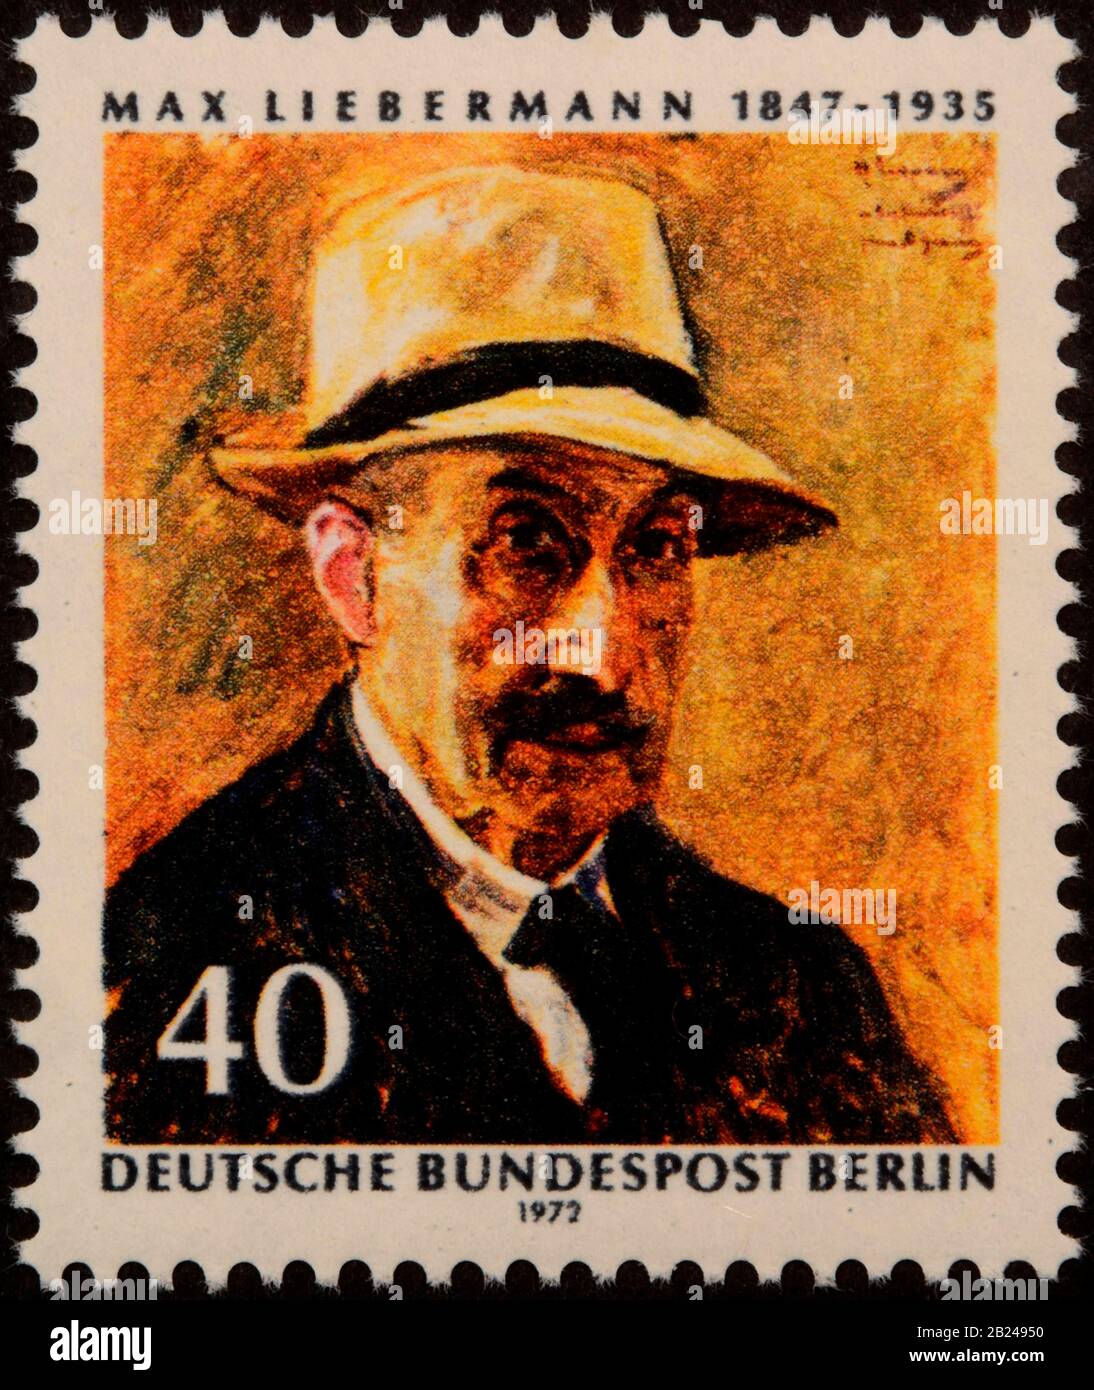 Max Liebermann, ein deutscher Maler und Druckermeister aschkenasischer jüdischer Abstammung, porträtiert auf einer deutschen Briefmarke Stockfoto